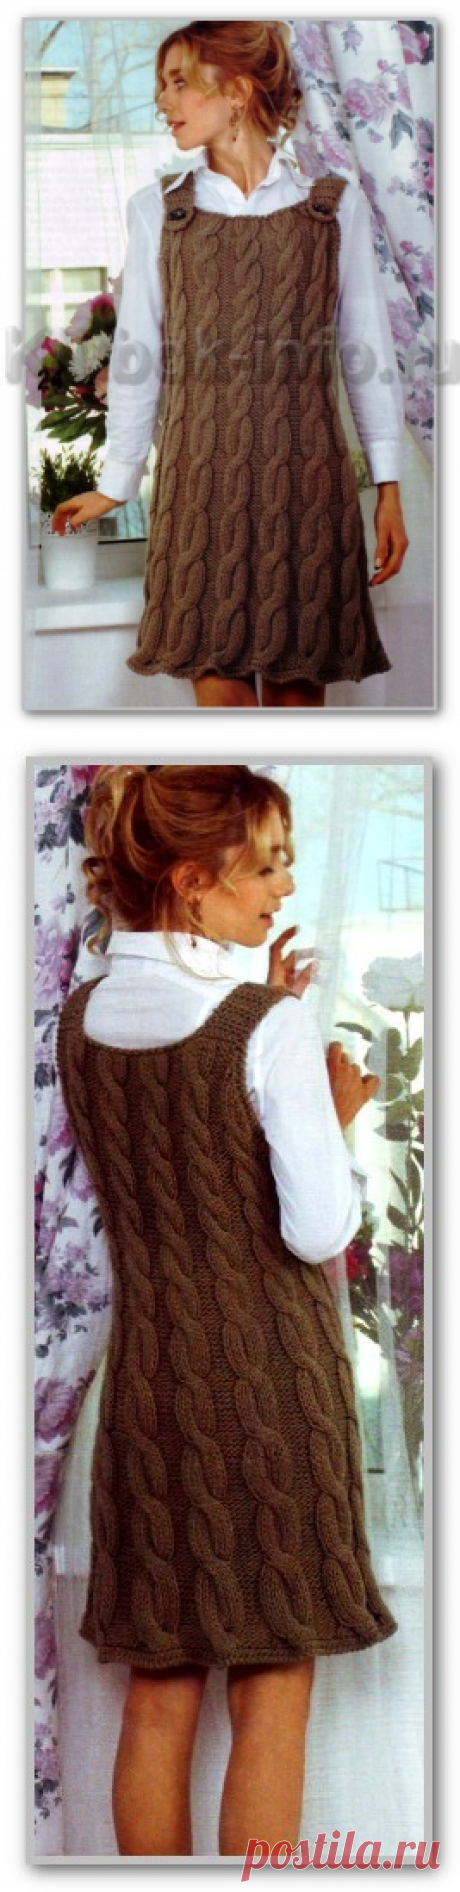 Вязание спицами. Описание женской модели со схемой и выкройкой. Однотонный теплый сарафан на лямках, с рельефными косами. Размеры: 46/48